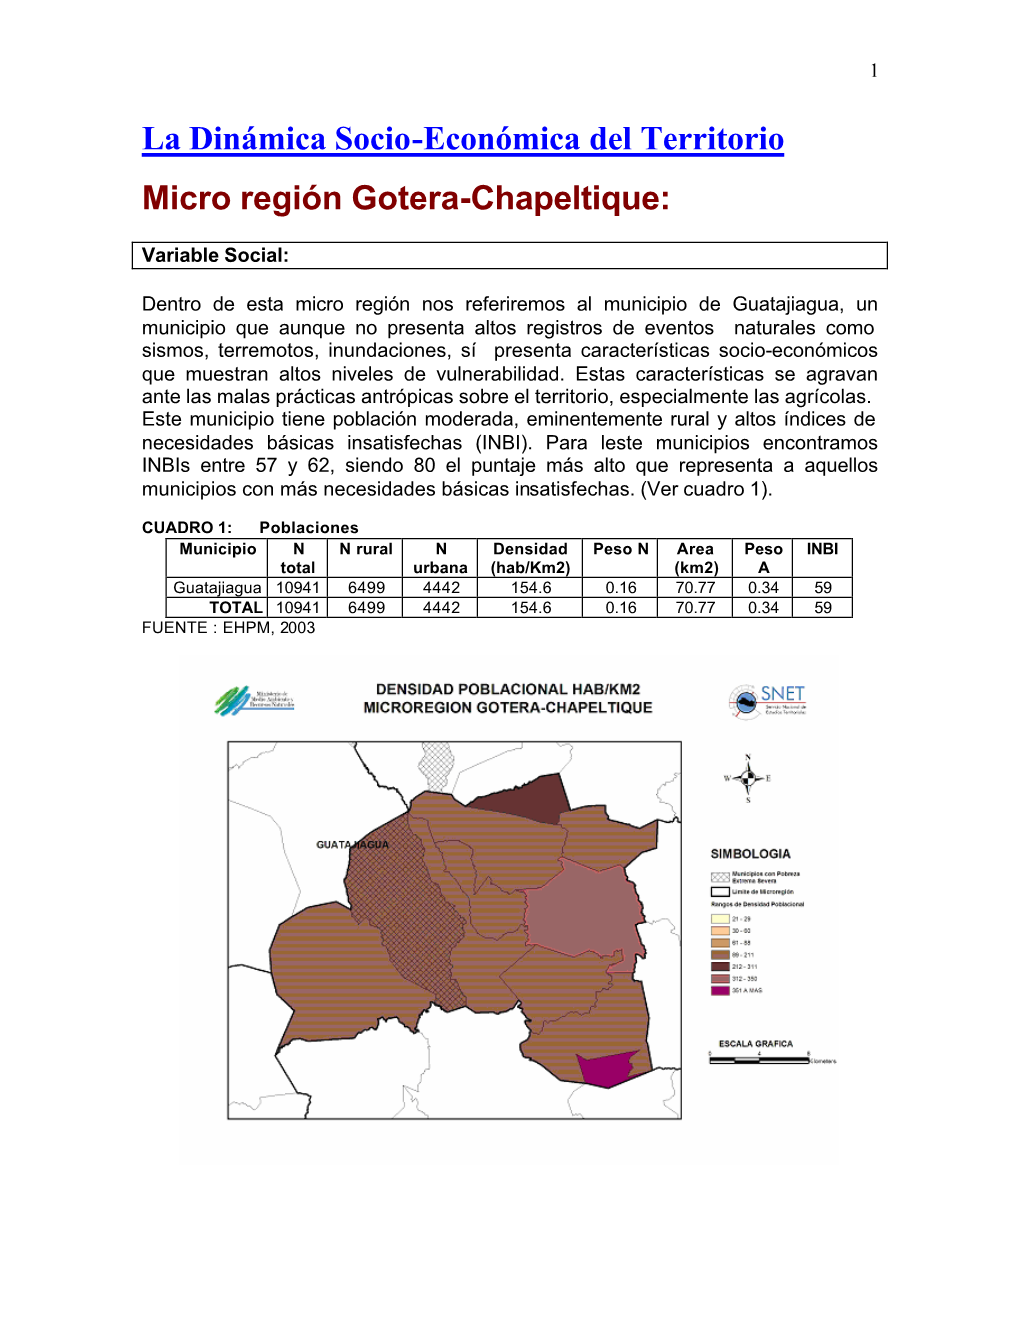 La Dinámica Socio-Económica Del Territorio Micro Región Gotera-Chapeltique